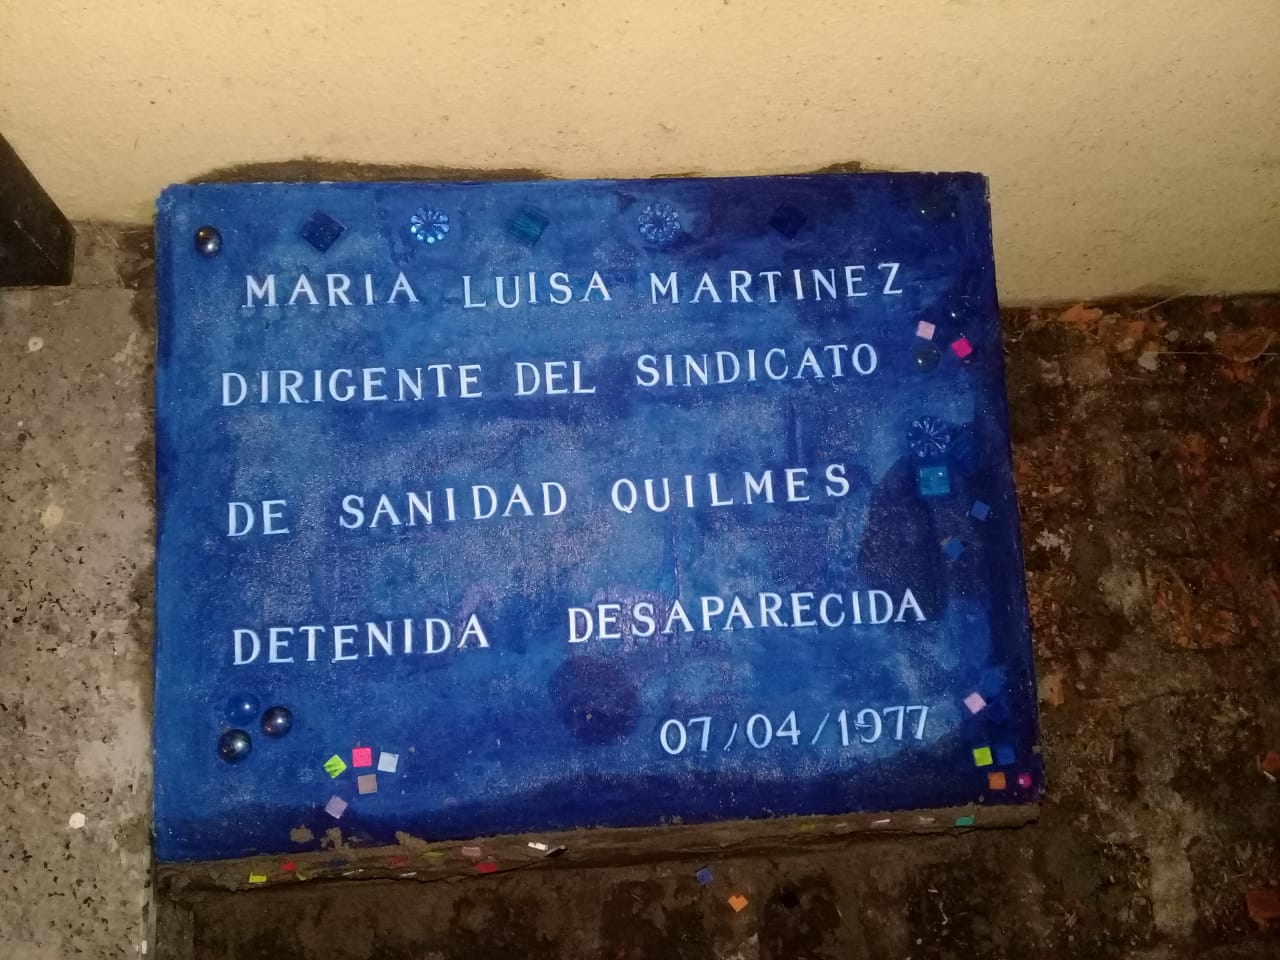 Colocaron baldosa por la memoria en homenaje a partera desaparecida en la dictadura militar en Quilmes